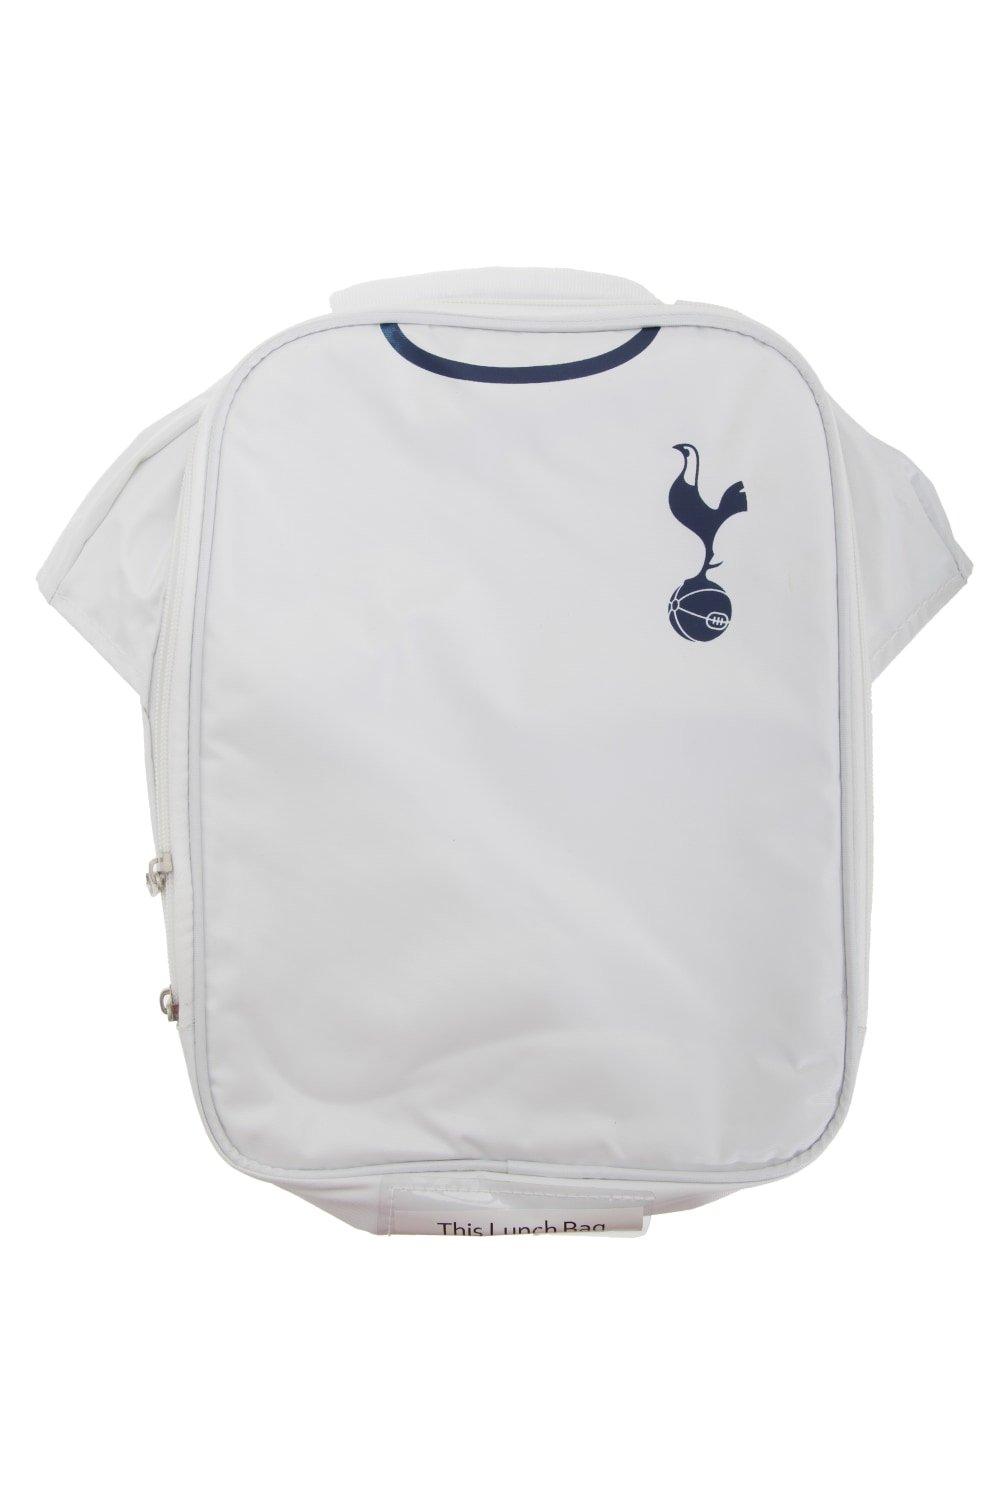 Официальная изолированная футбольная рубашка-холодильник для сумки для обеда Tottenham Hotspur FC, белый органайзер fit 65646 29 5 х 22 х 7 6 см двухсторонний